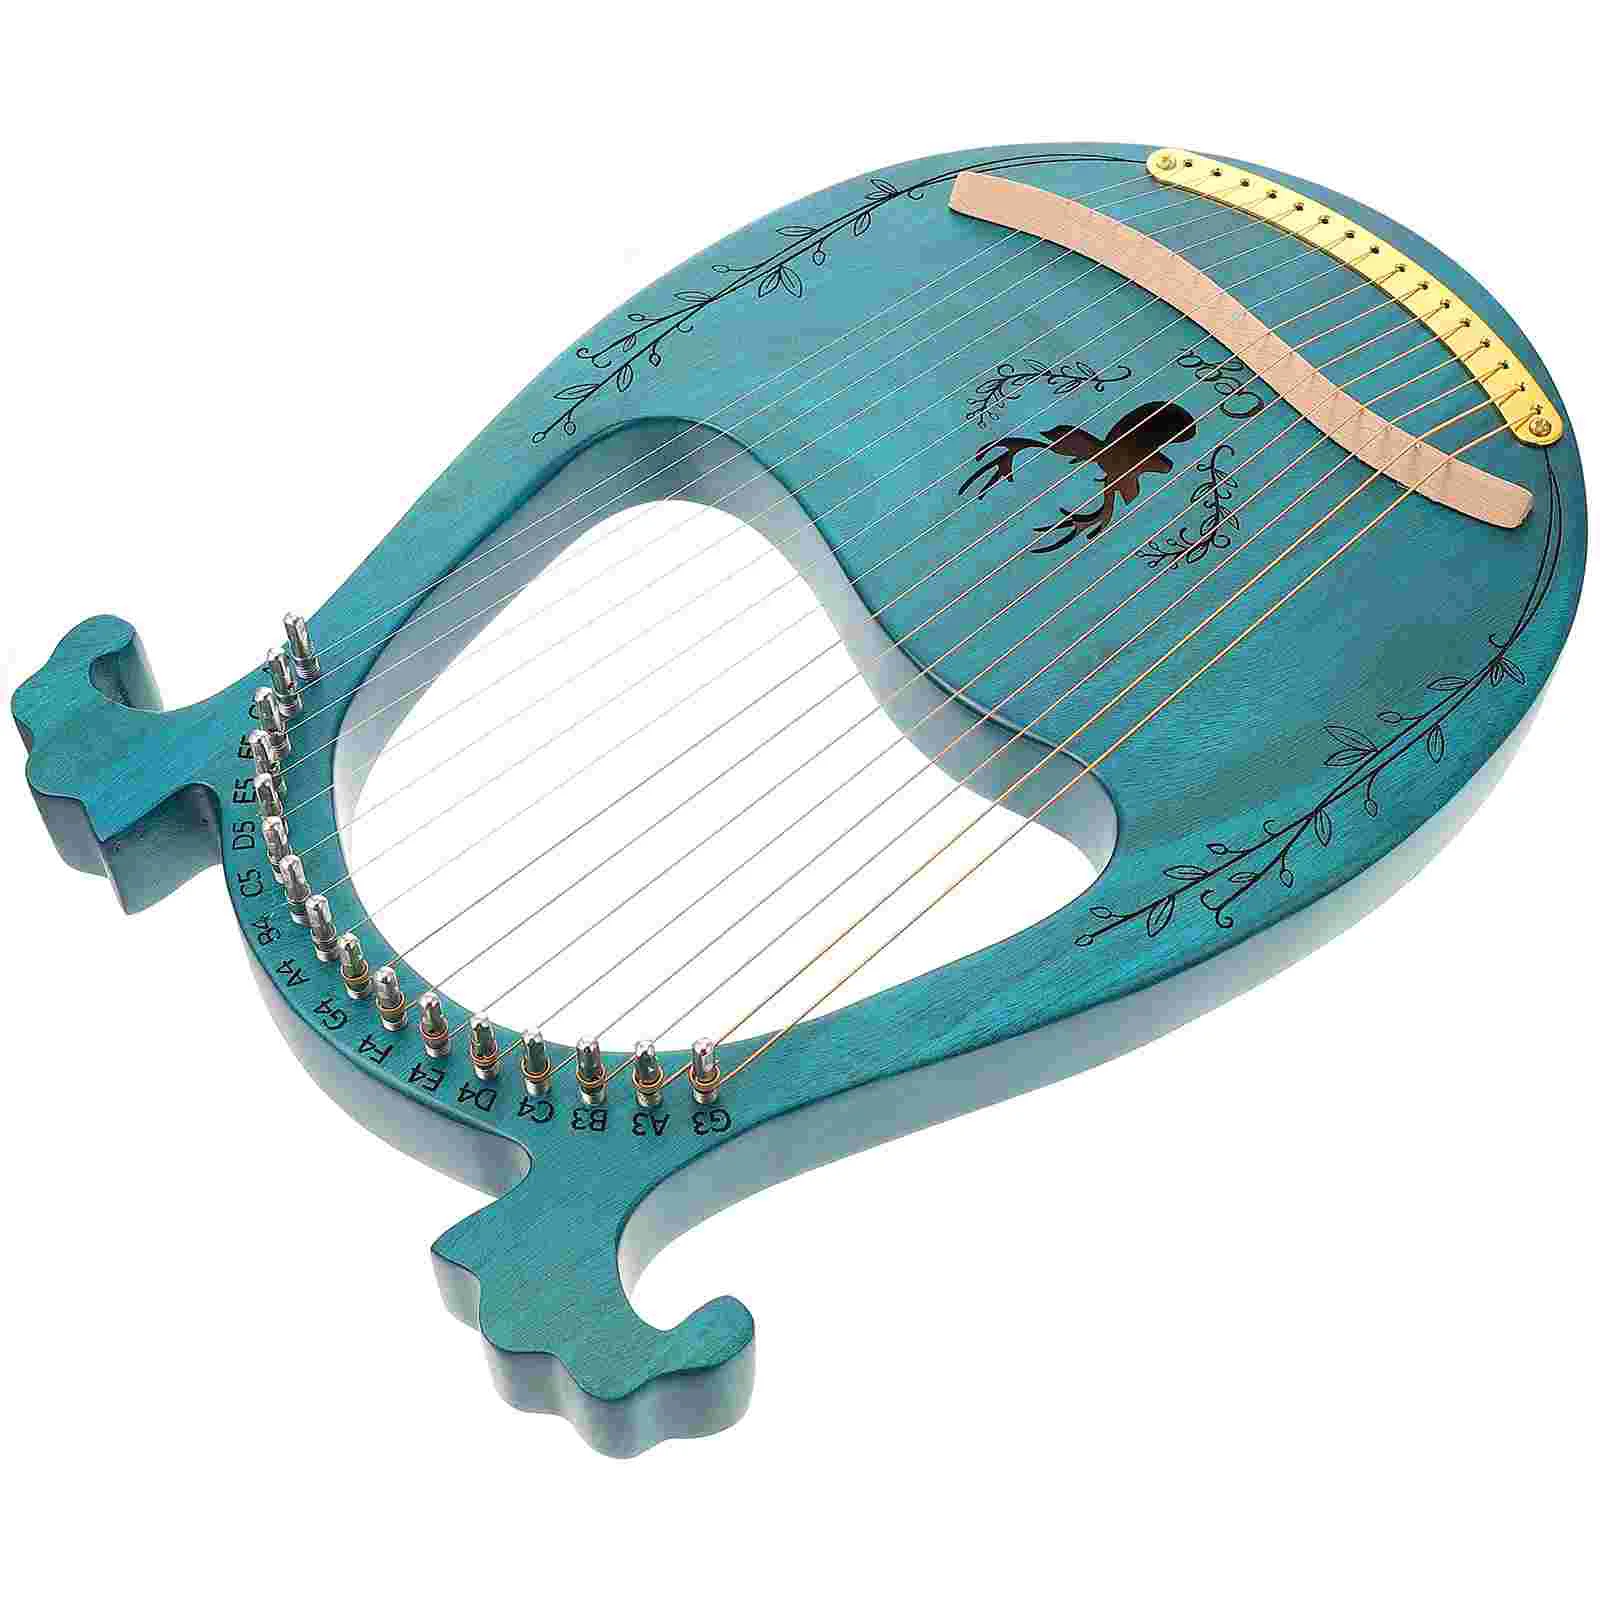 

1 Набор деревянных Lyre Harp Ретро 16 струн Lyre Harp музыкальная струна инструмент (синий)